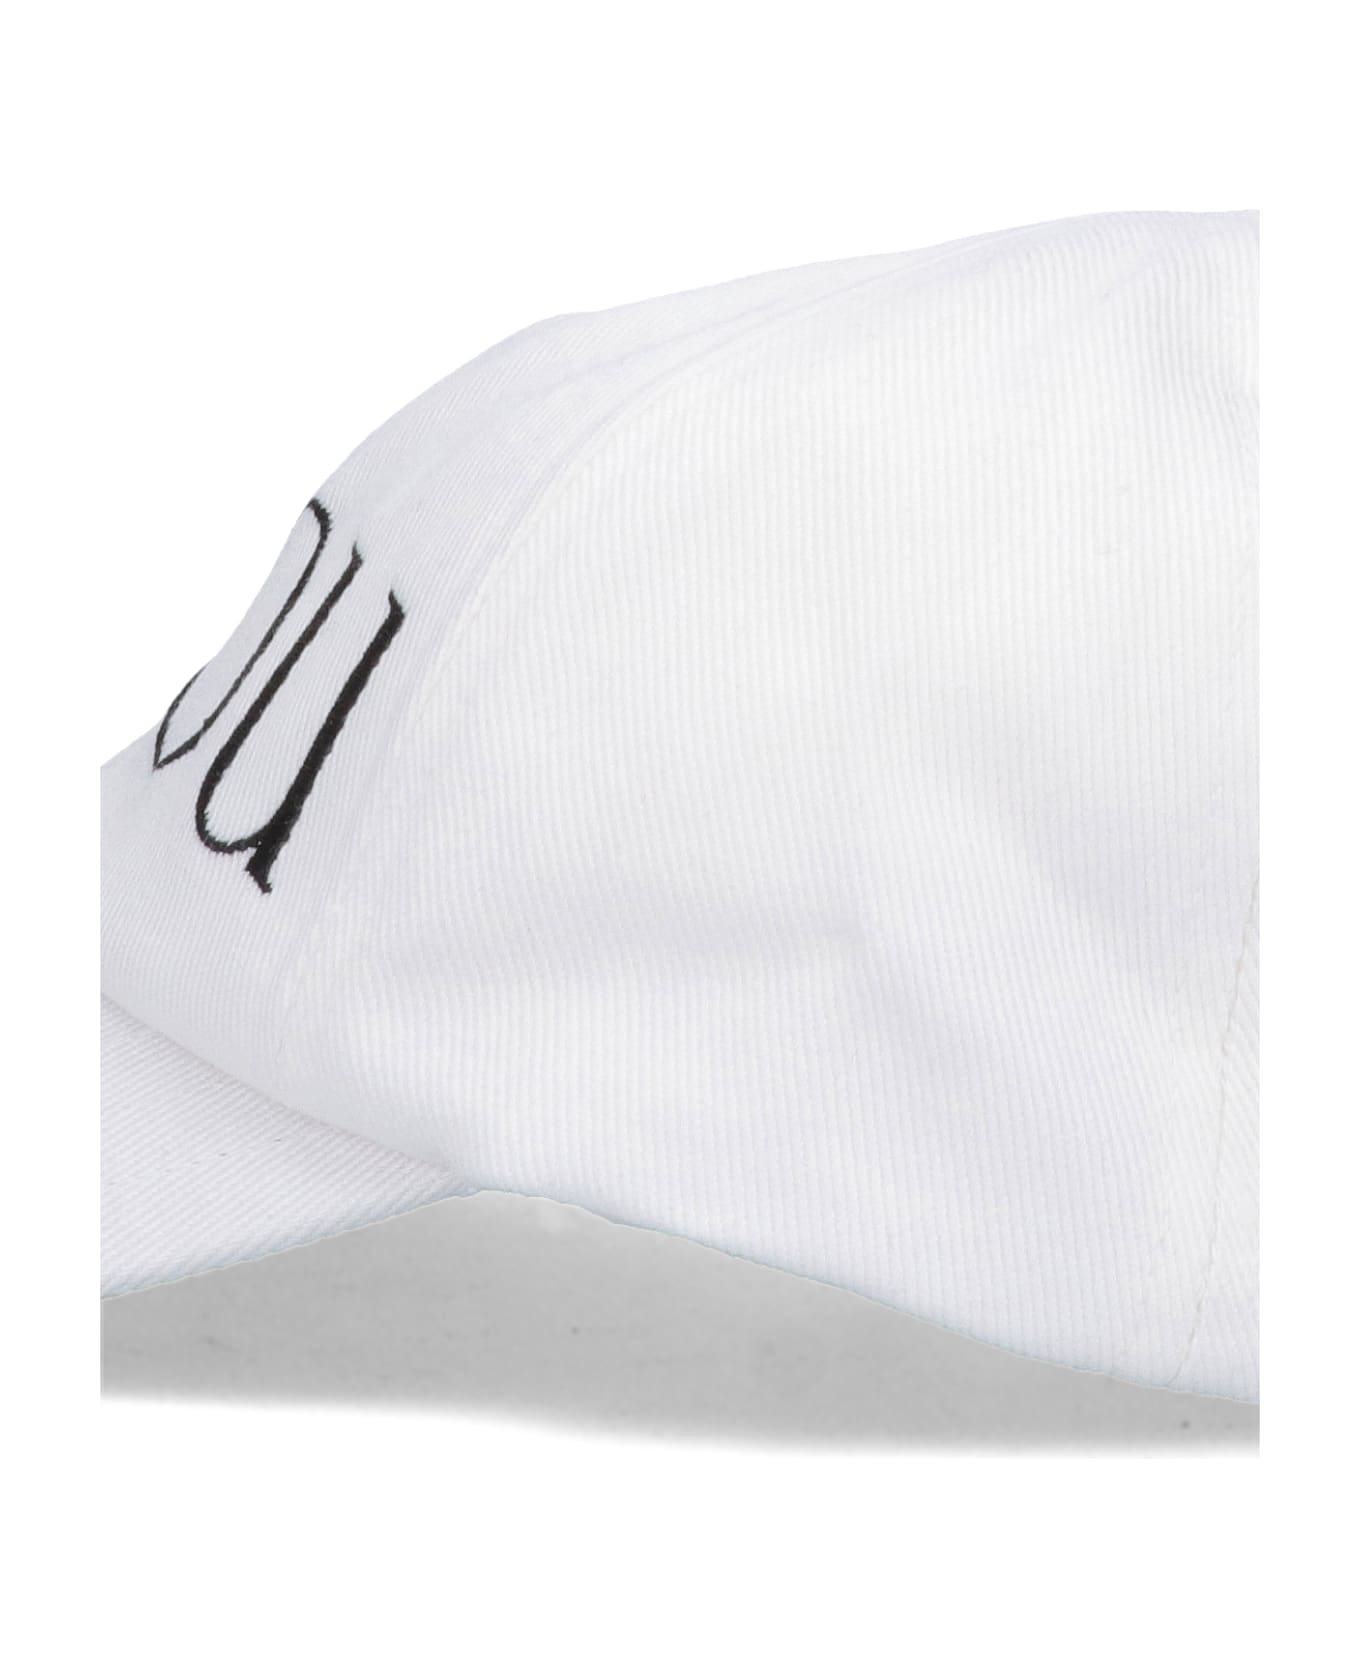 Patou Hat - Bianco